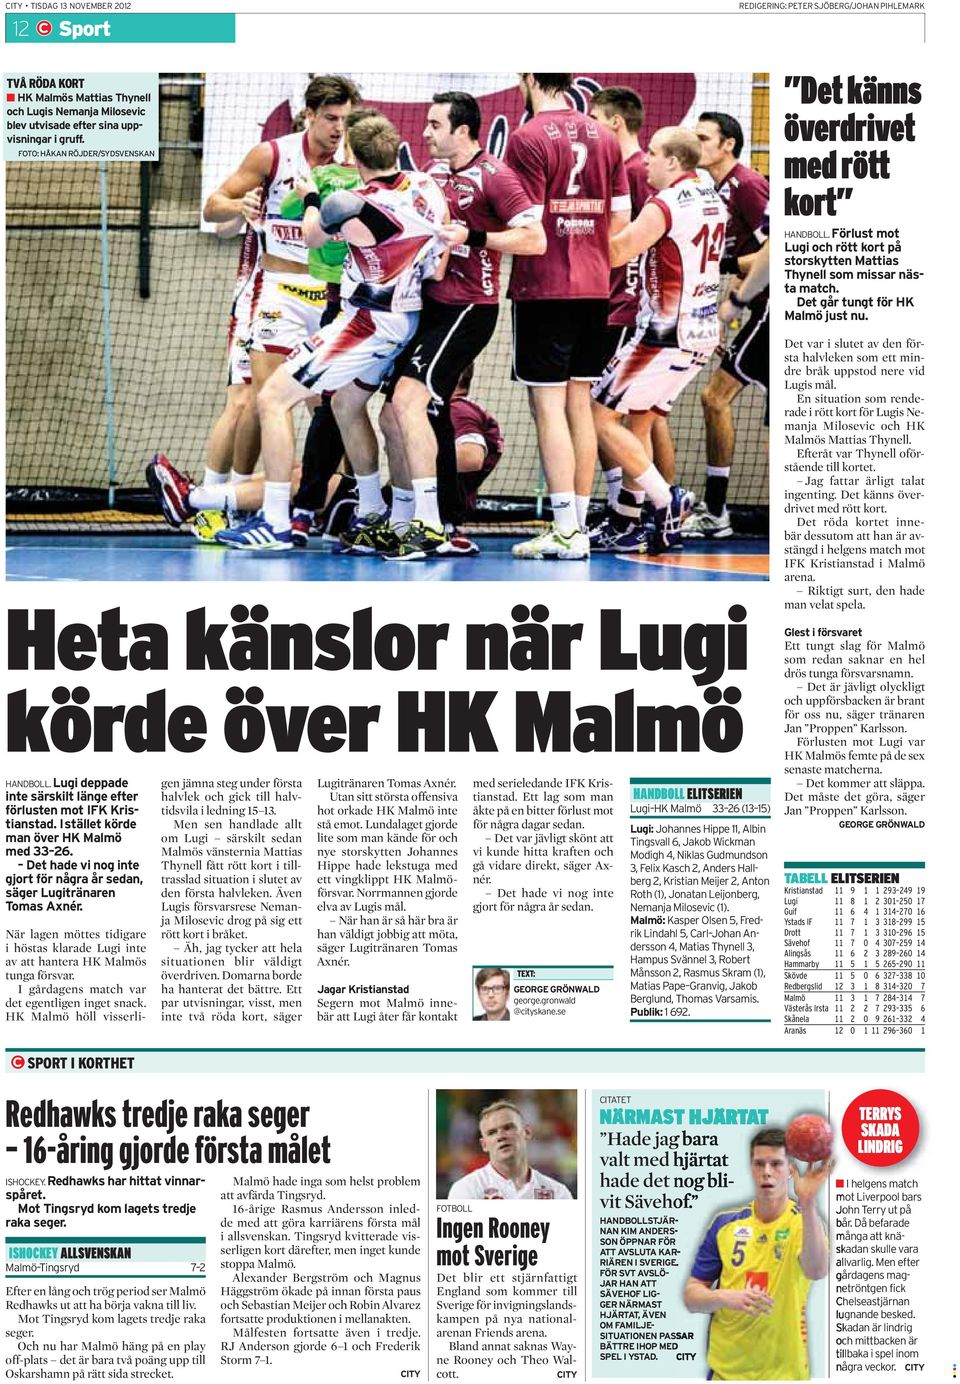 Förlust mot Lugi och rött kort på storskytten Mattias Thynell som missar nästa match. Det går tungt för HK Malmö just nu. Heta känslor när Lugi körde över HK Malmö HANDBOLL.